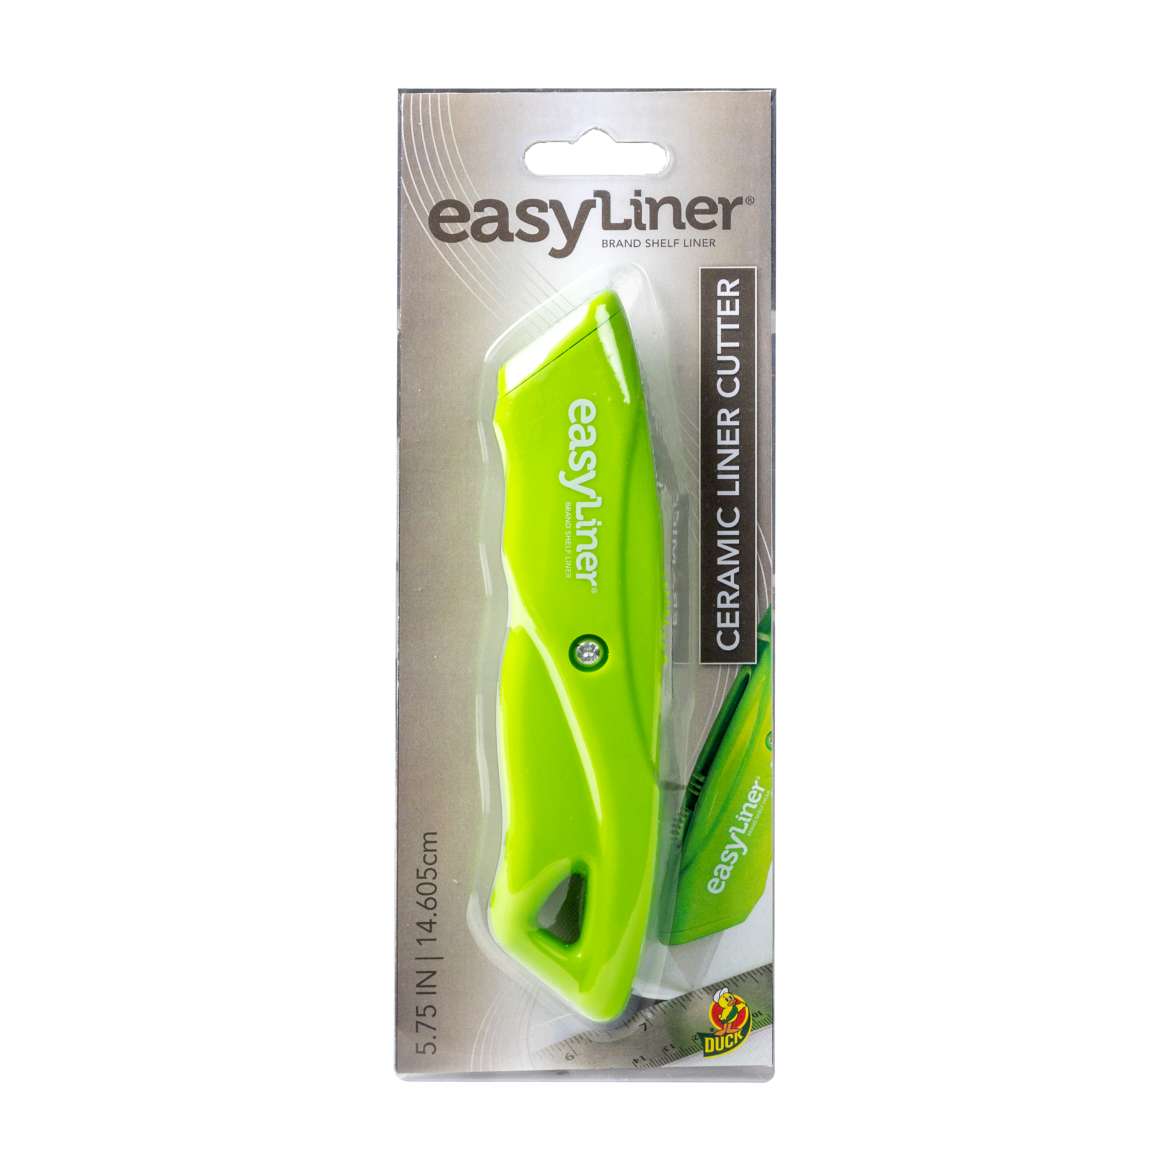 Easy Liner® Shelf Liner Cutter